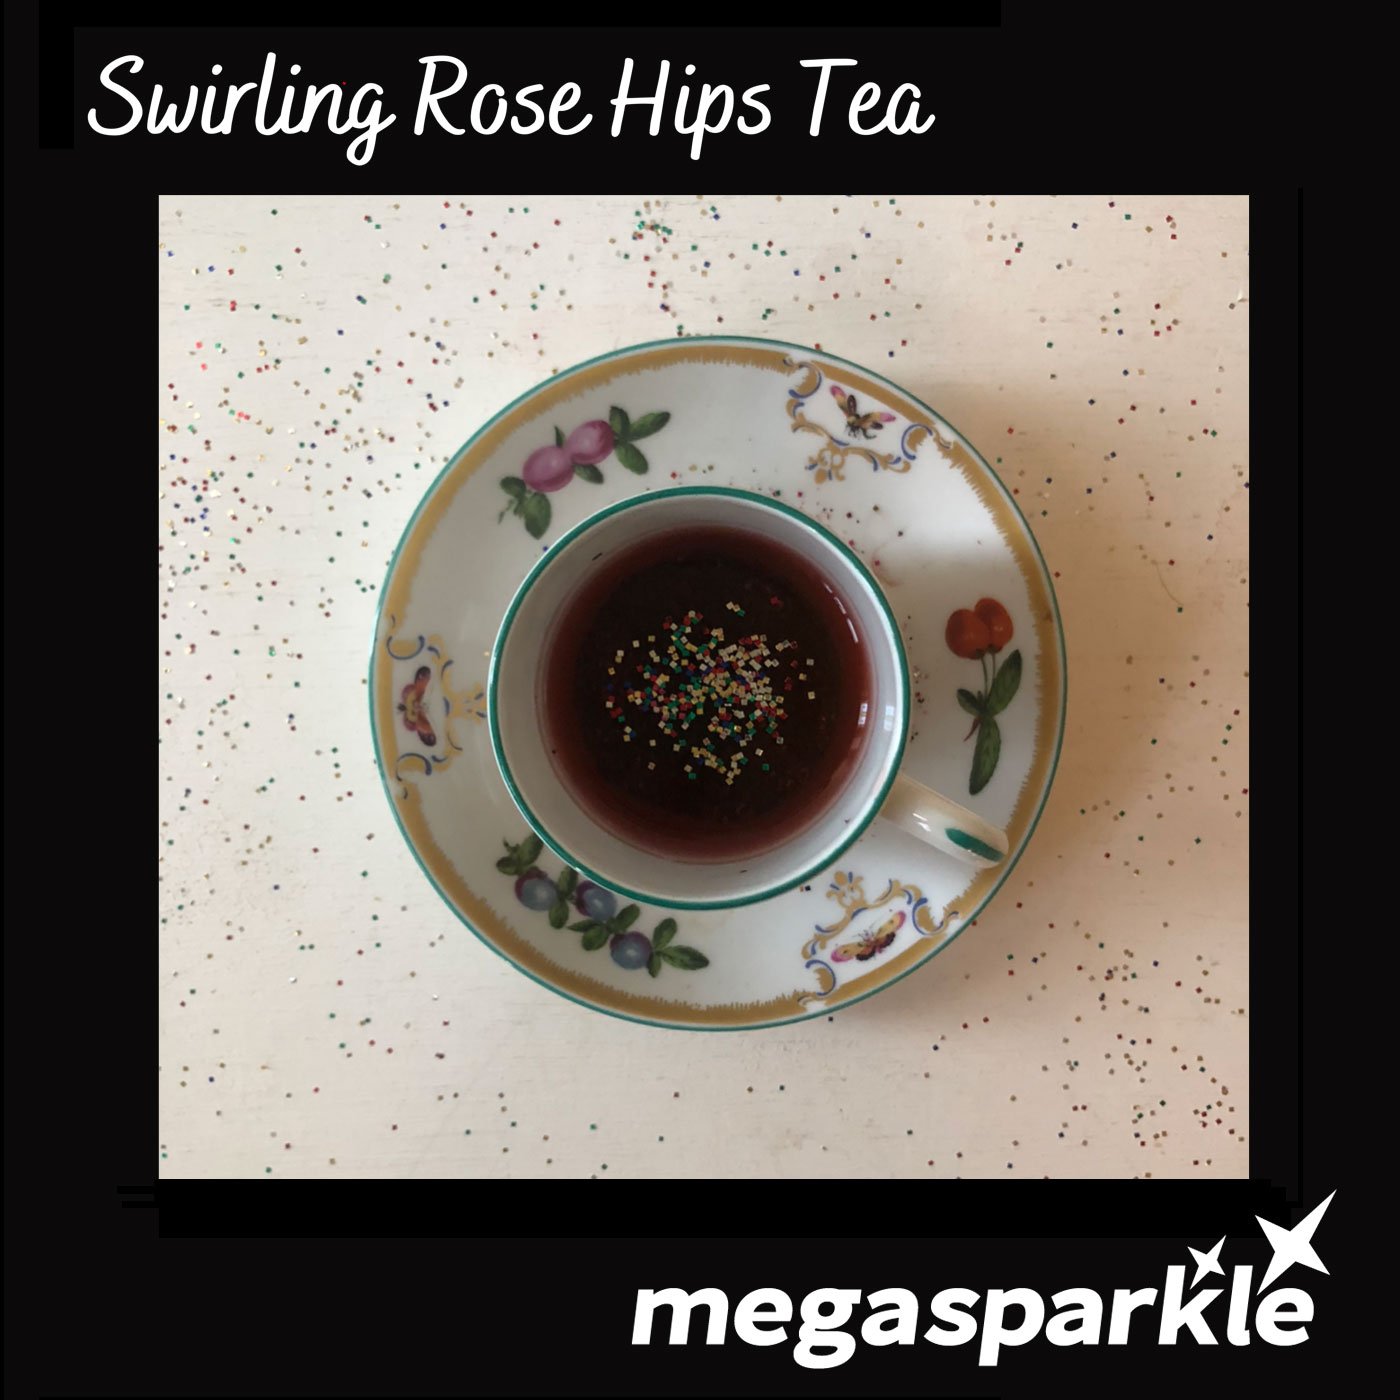 Megasparkle Swirling Rose Hips Tea song cover artwork.jpg